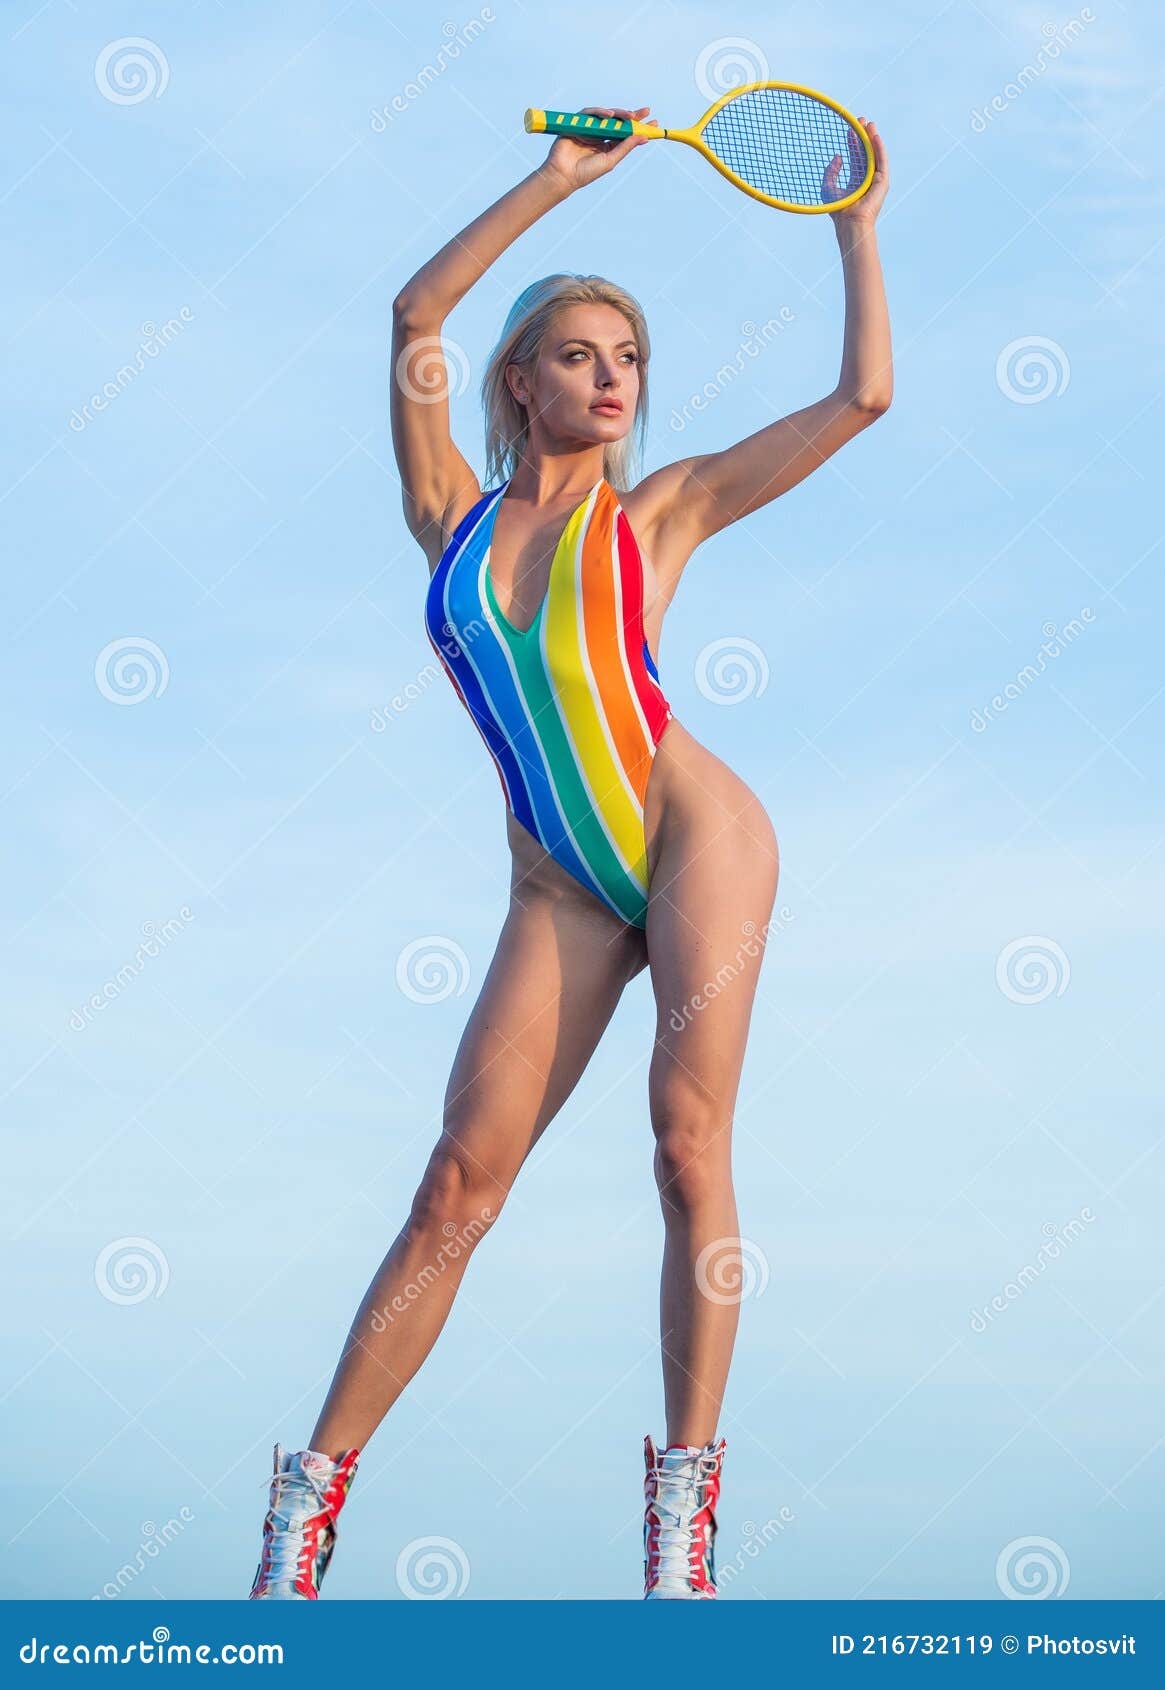 Motley register downstairs Demonstrar Seu Corpo. Atividade No Verão. Garota Em Bikini Na Praia Com  Raquete. Desportista. Imagem de Stock - Imagem de bonito, colorido:  216732119